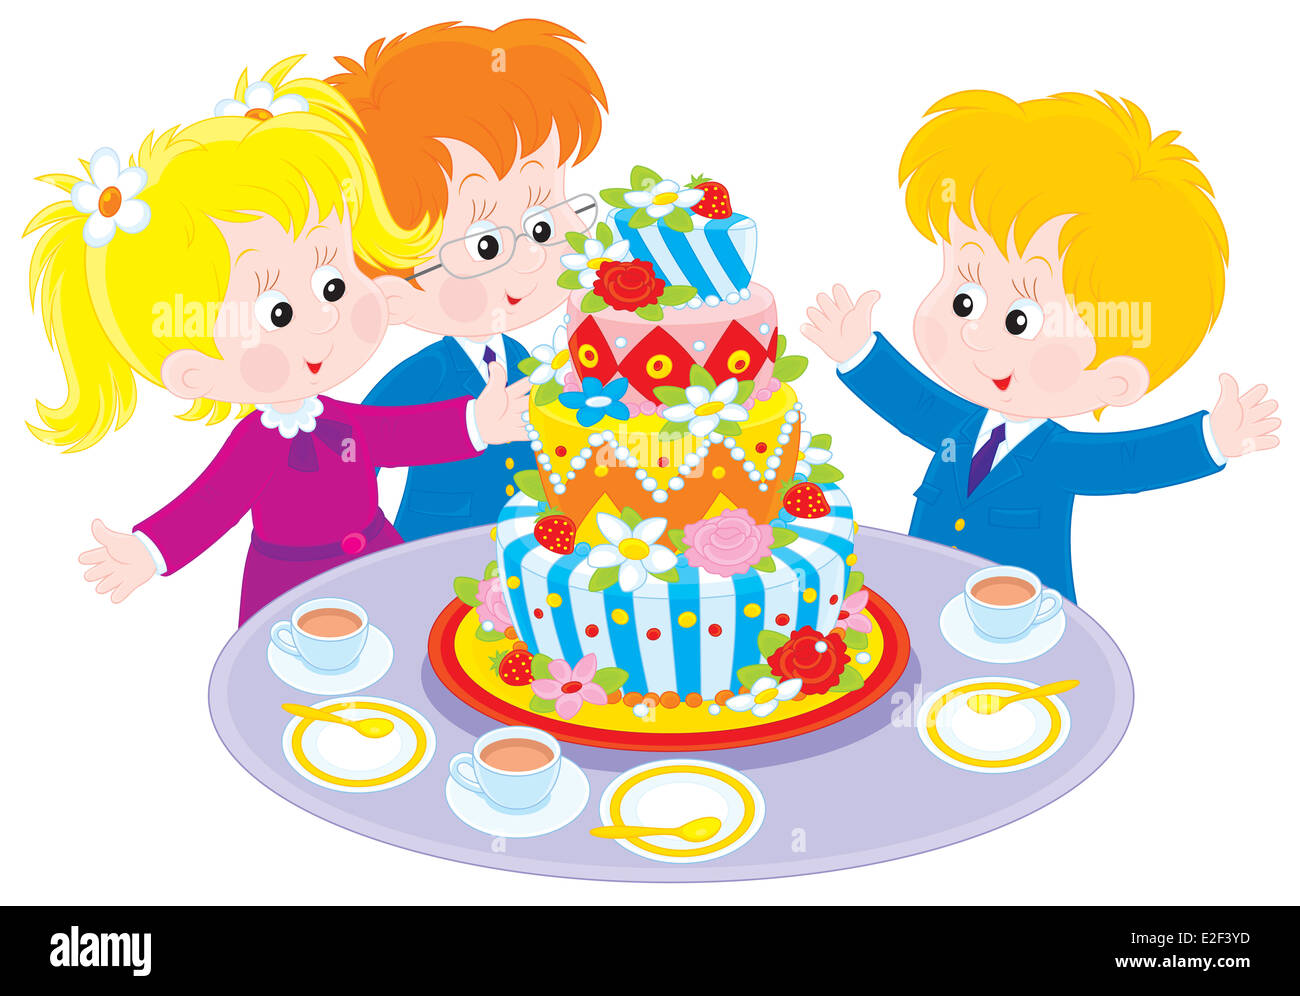 Дети вокруг торта